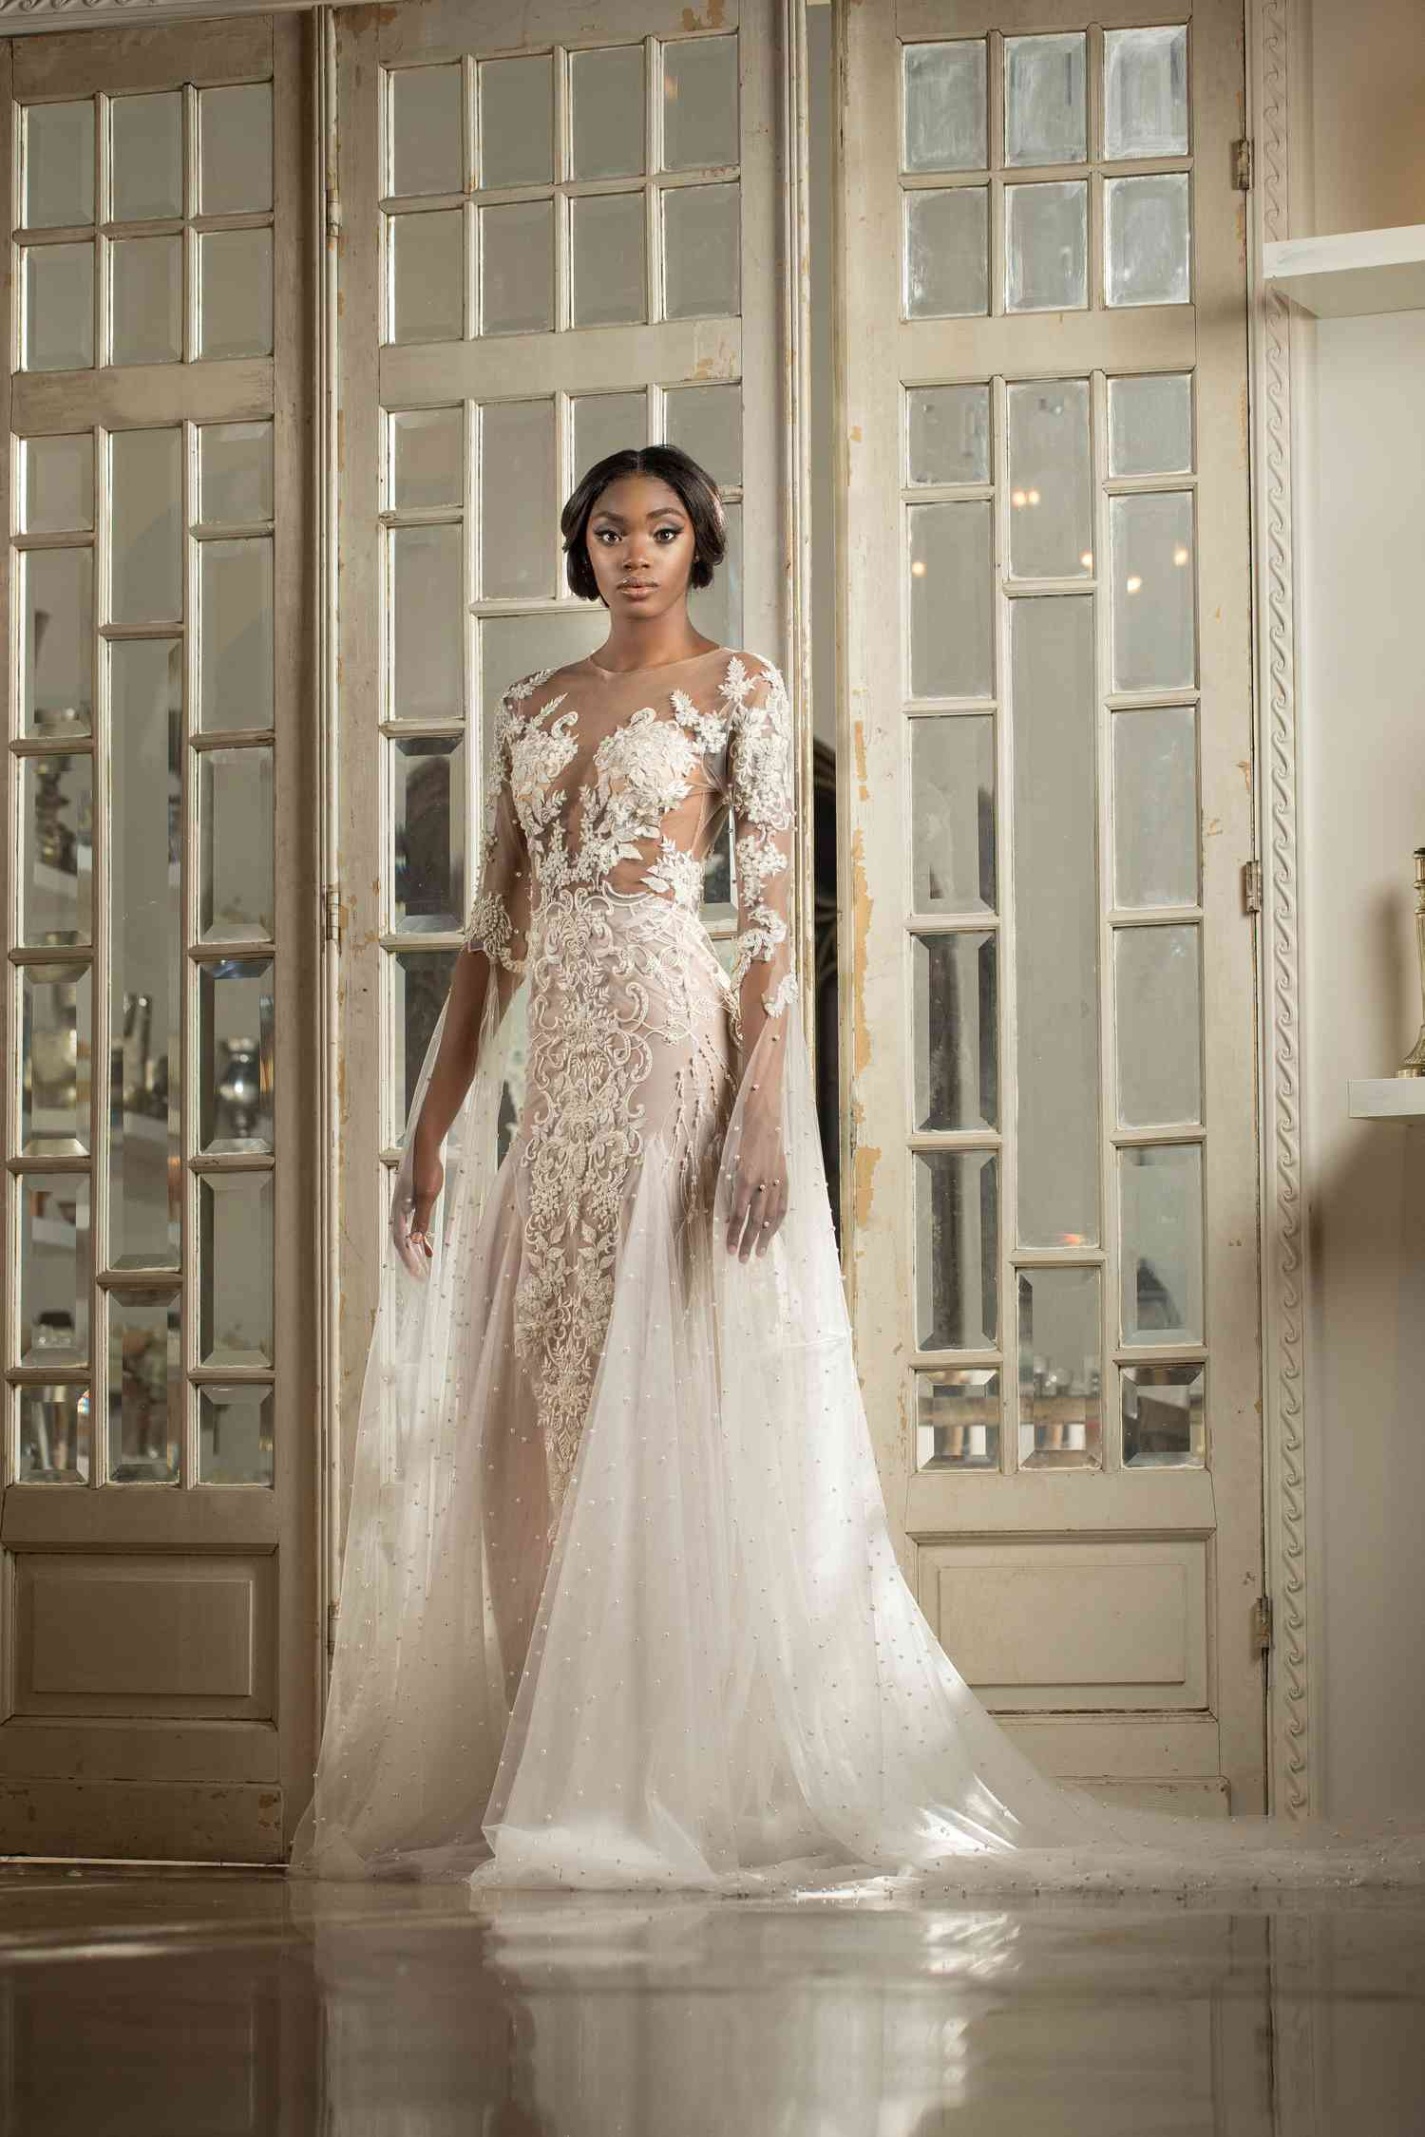 african wedding dress designers Bulan 5  Black Wedding Dress Designers to Know